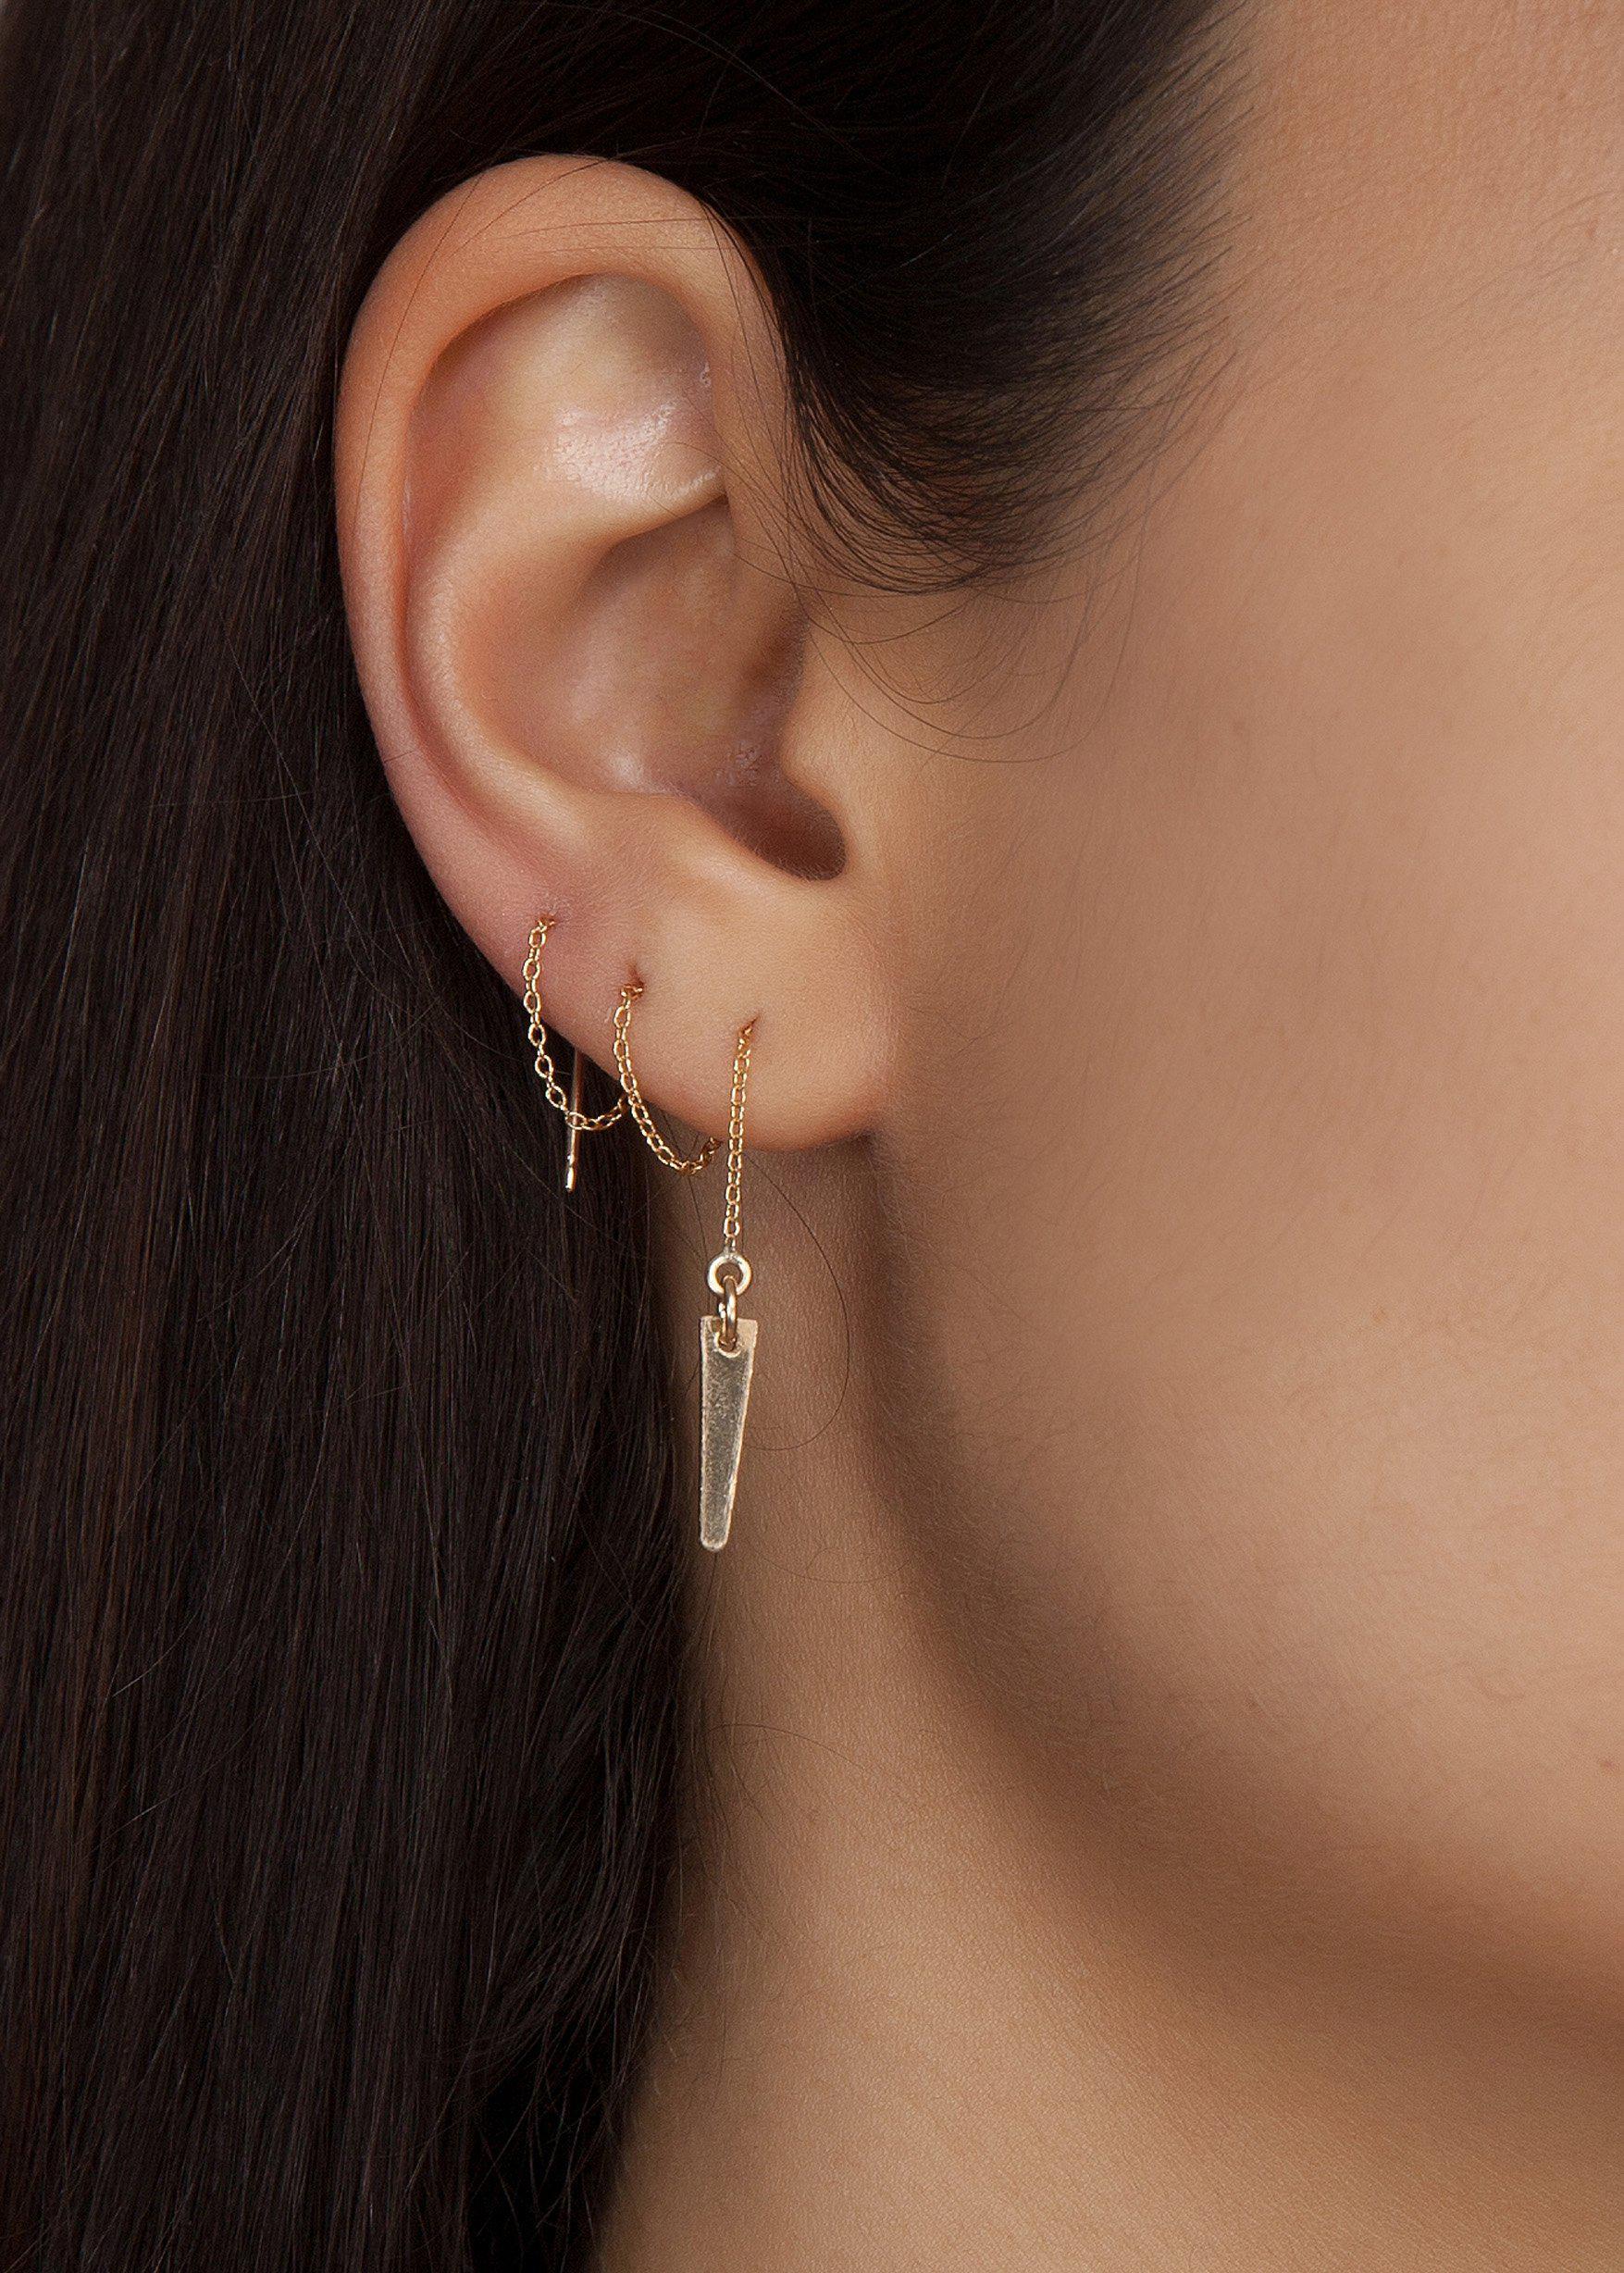 Silk thread earrings | Silk thread earrings designs, Silk thread earrings,  Silk thread jewelry